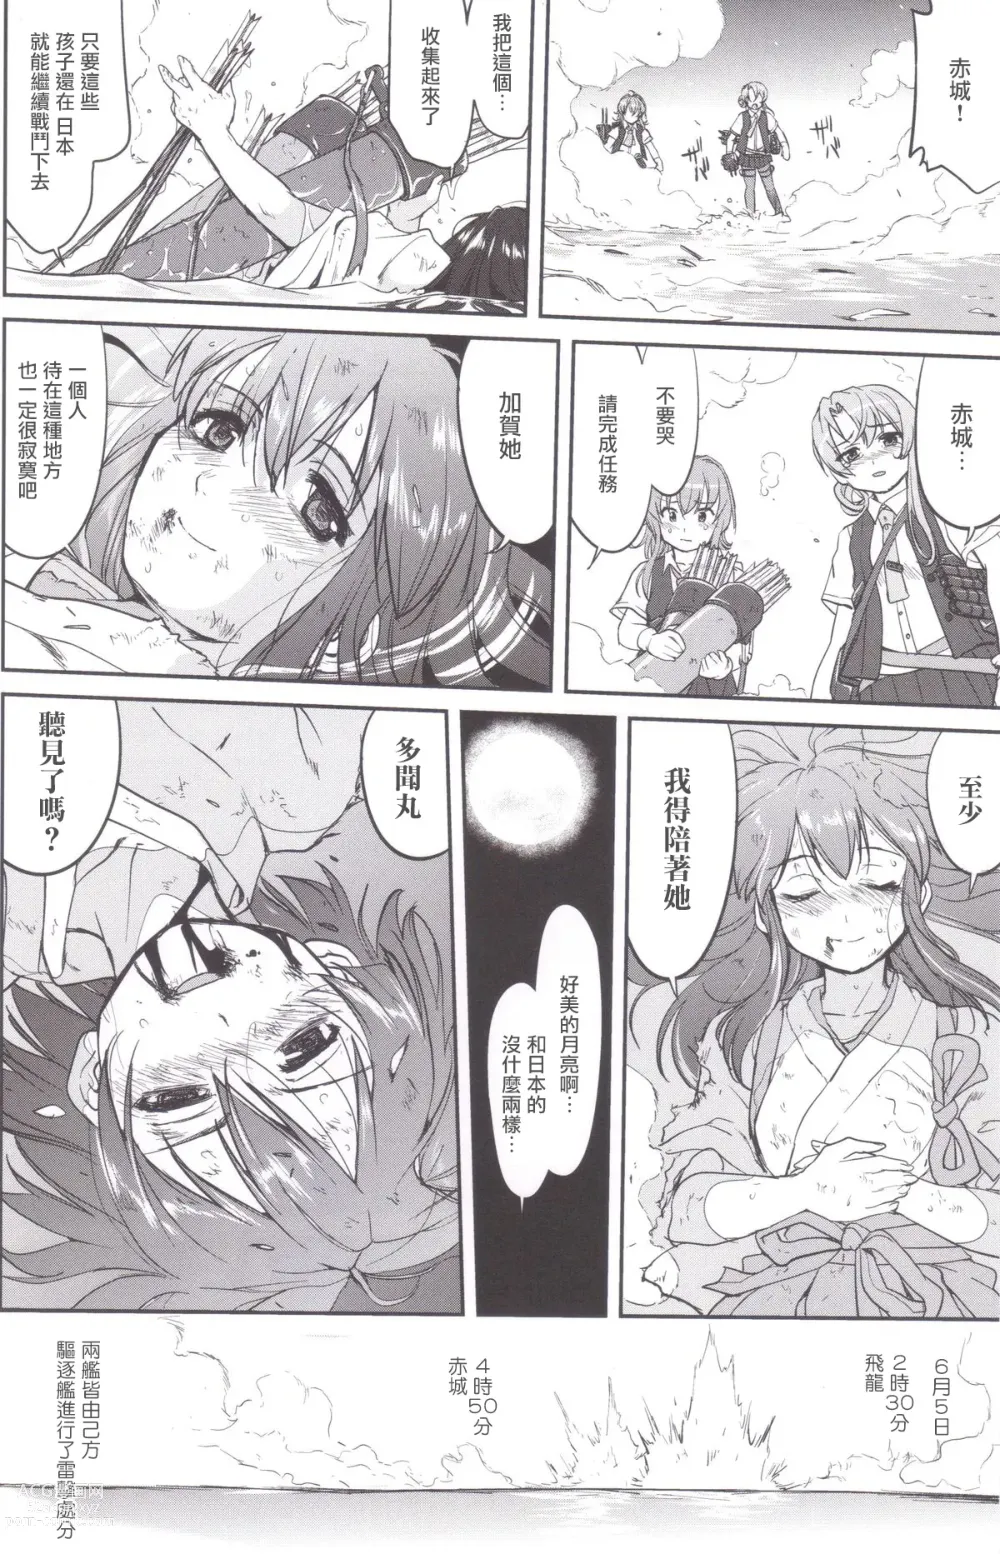 Page 53 of doujinshi Teitoku no Ketsudan MIDWAY